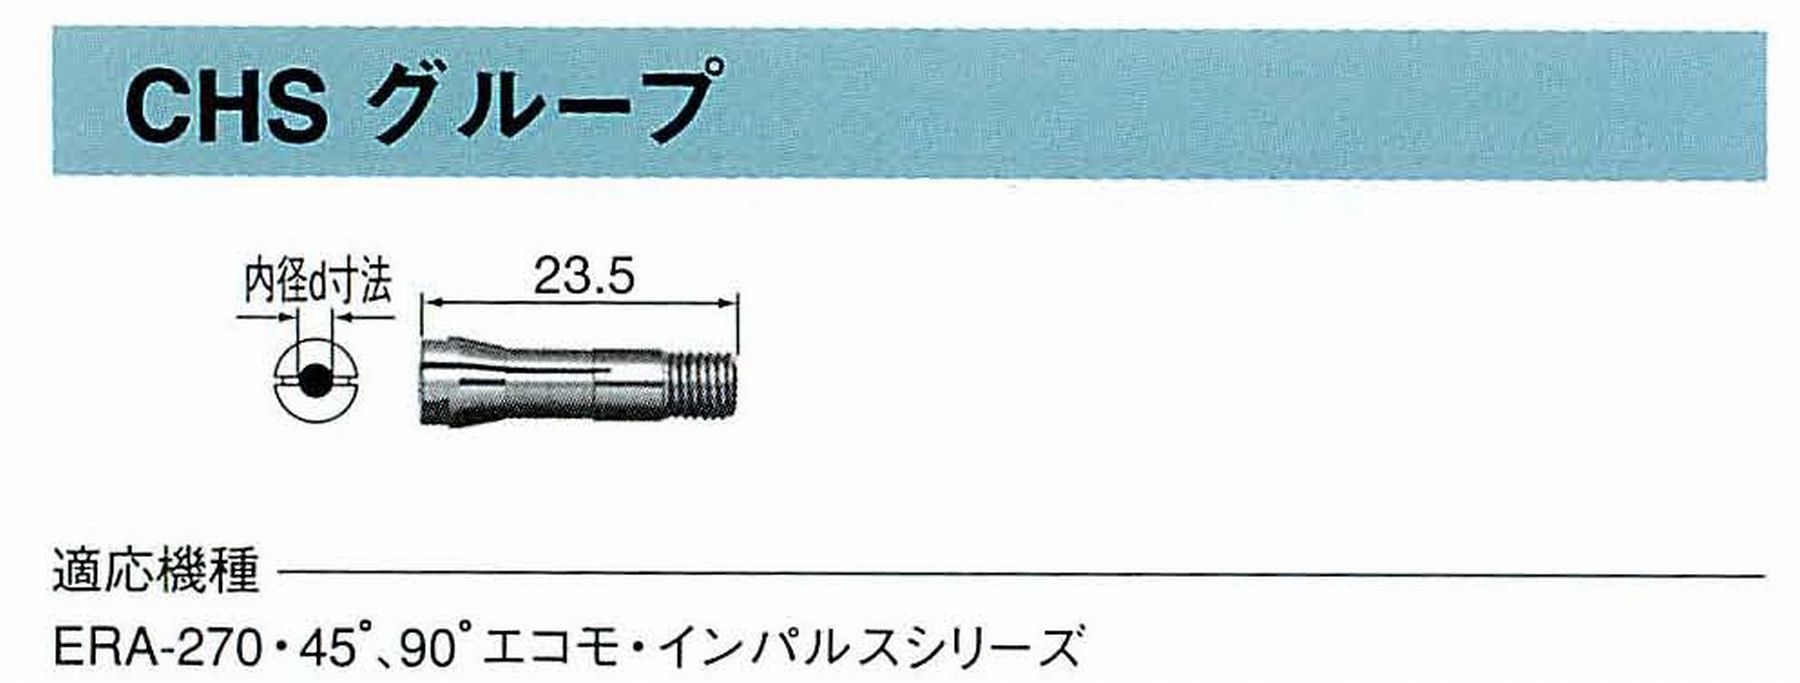 ナカニシ/NAKANISHI コレットチャック コード番号 90518 型式 CHS-1.8 内径:Φ1.8